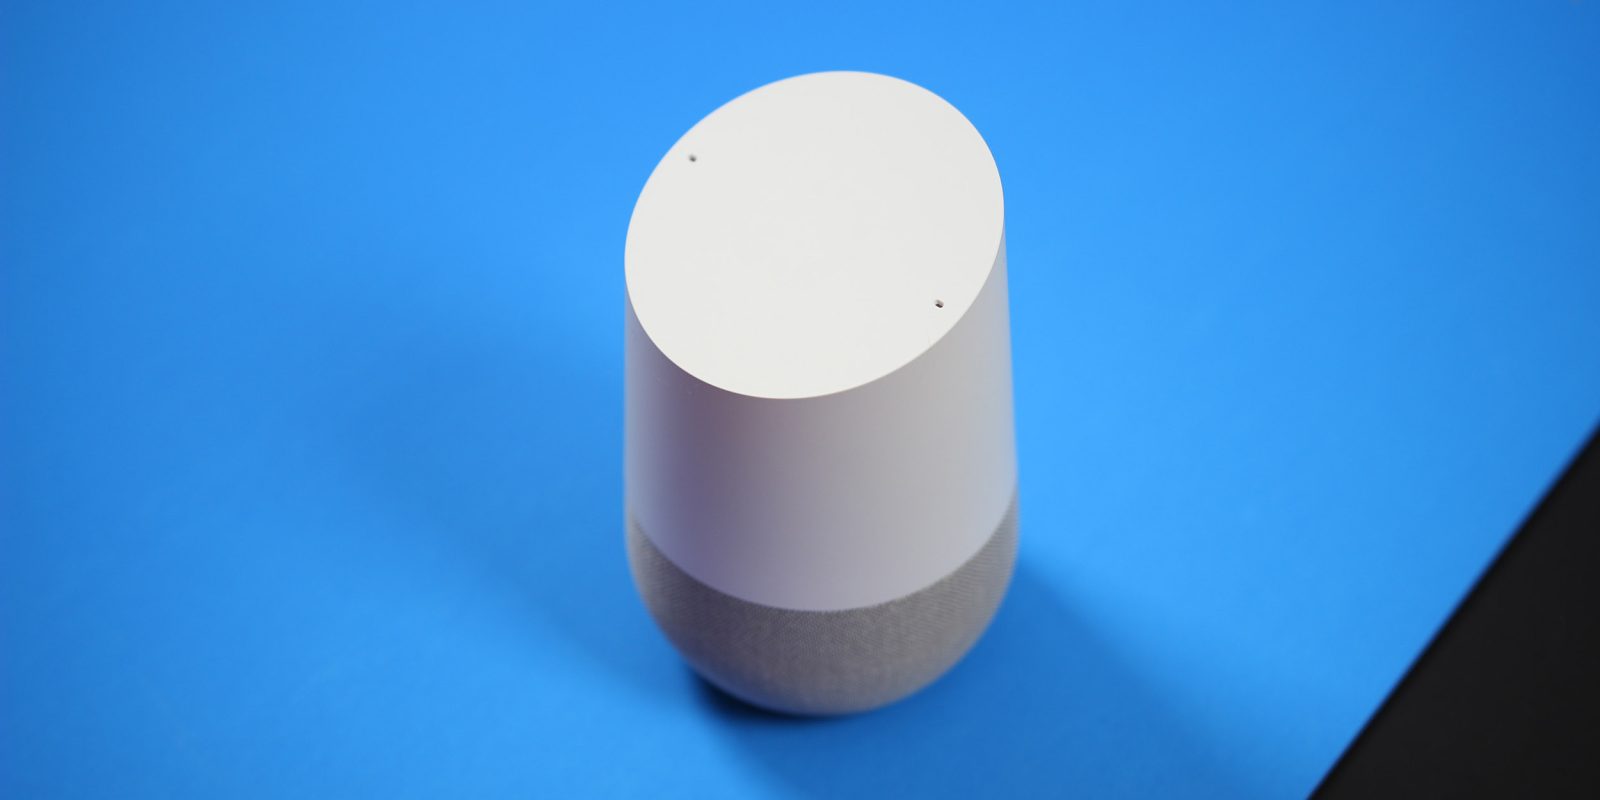 google home assistant smart speaker